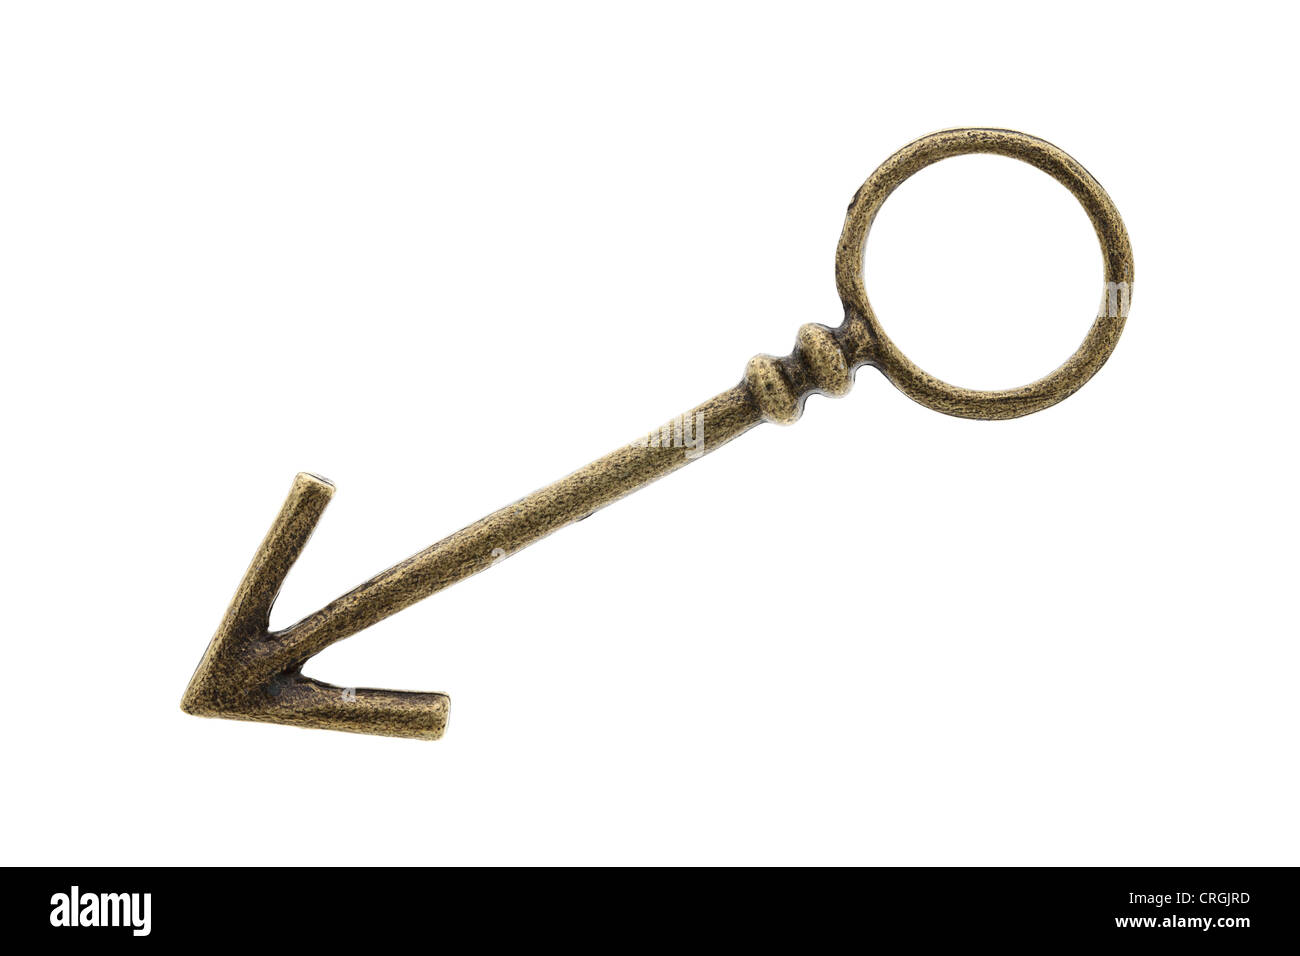 Antique key isolated on white background Stock Photo